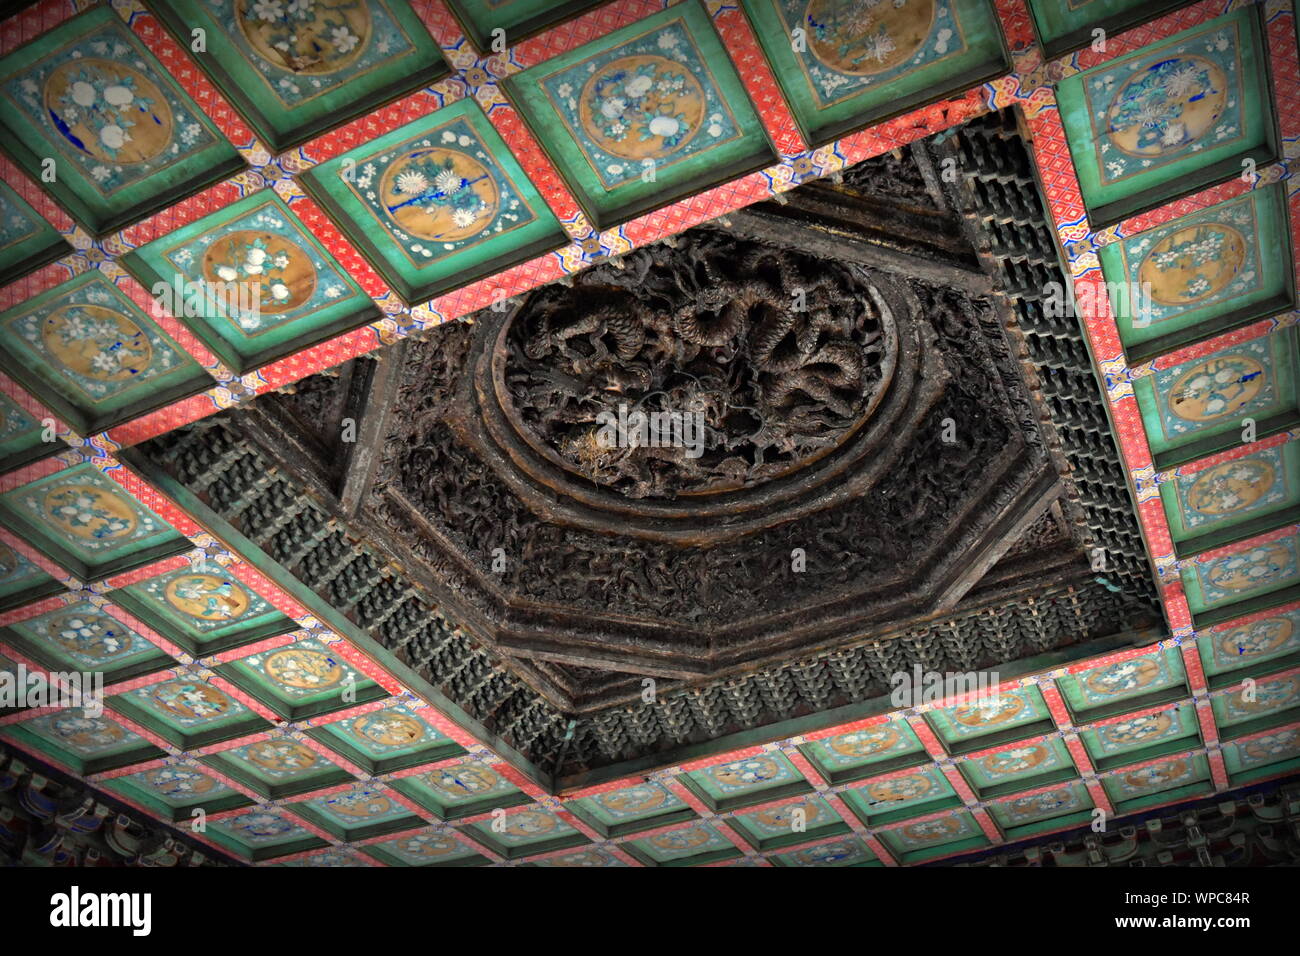 Vieux bois chinois dragon et plafond de couleur magnifiquement Fubi pavillon de la Cité Interdite jardin impérial palace, Beijing, Chine Banque D'Images